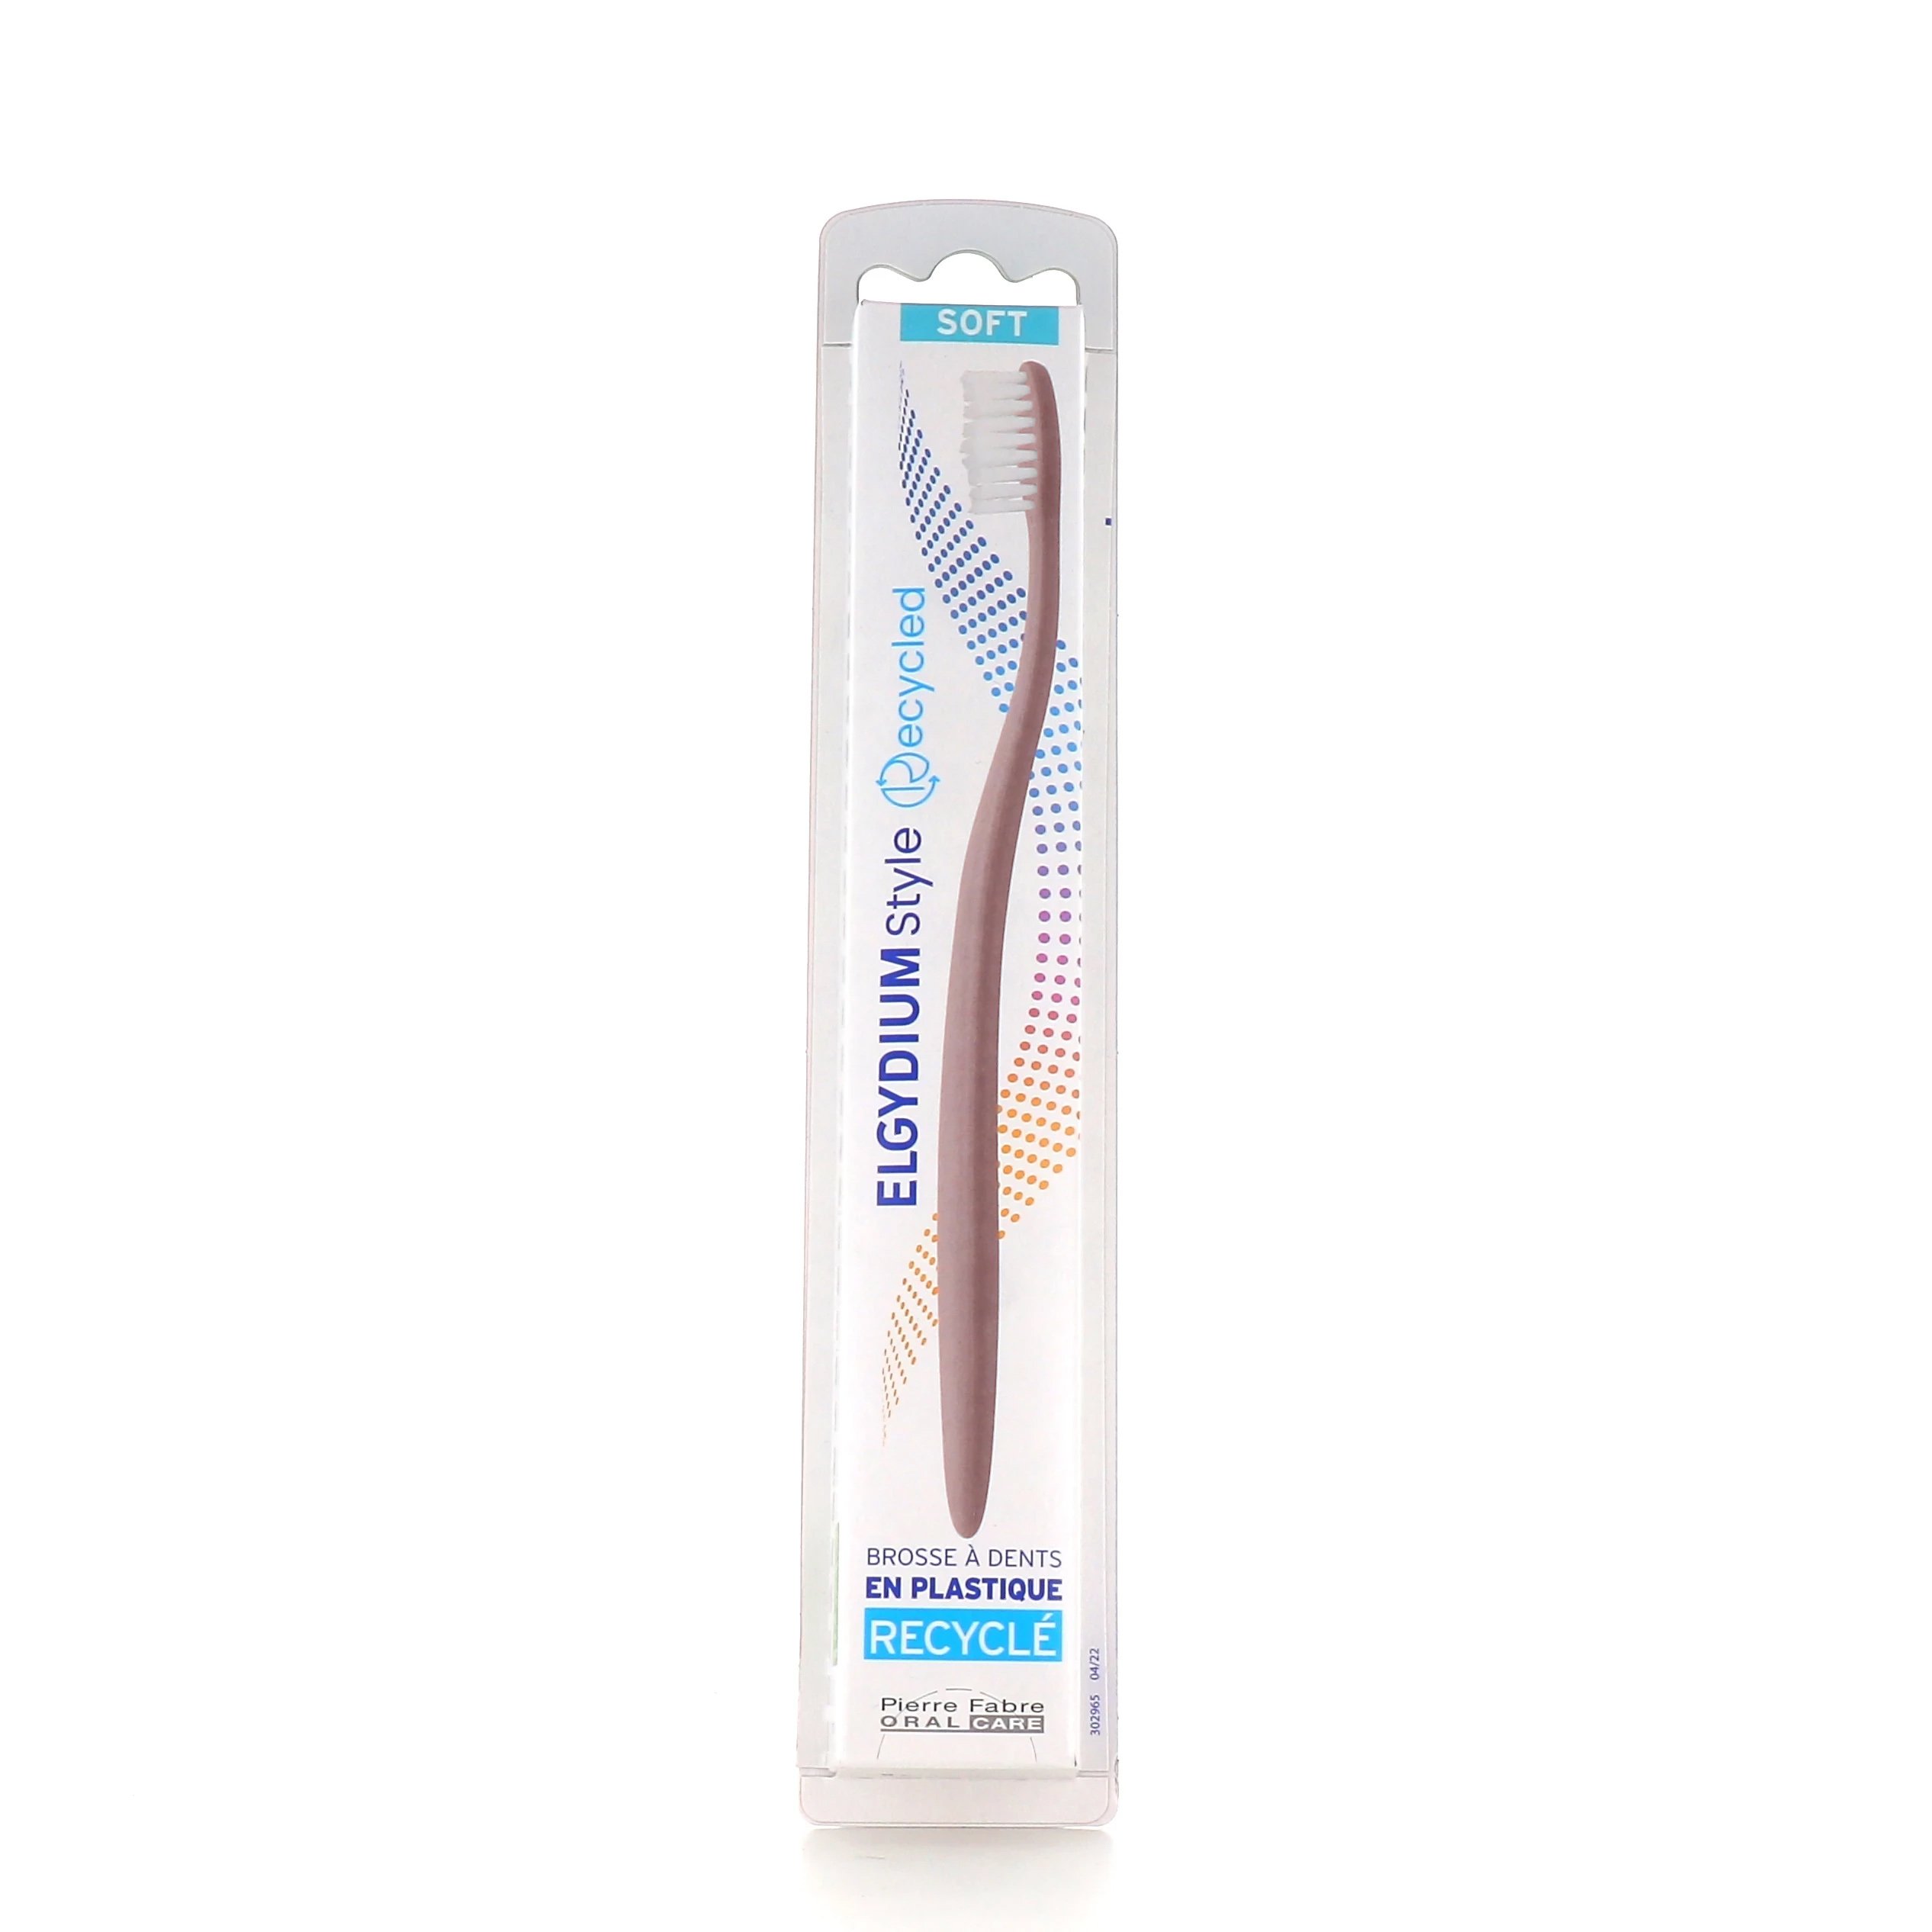 Elgydium Style Recycled Toothbrush Soft Χειροκίνητη Οδοντόβουρτσα Κατασκευασμένη Από Ανακυκλώσιμα Υλικά 1 Τεμάχιο – Ροζ